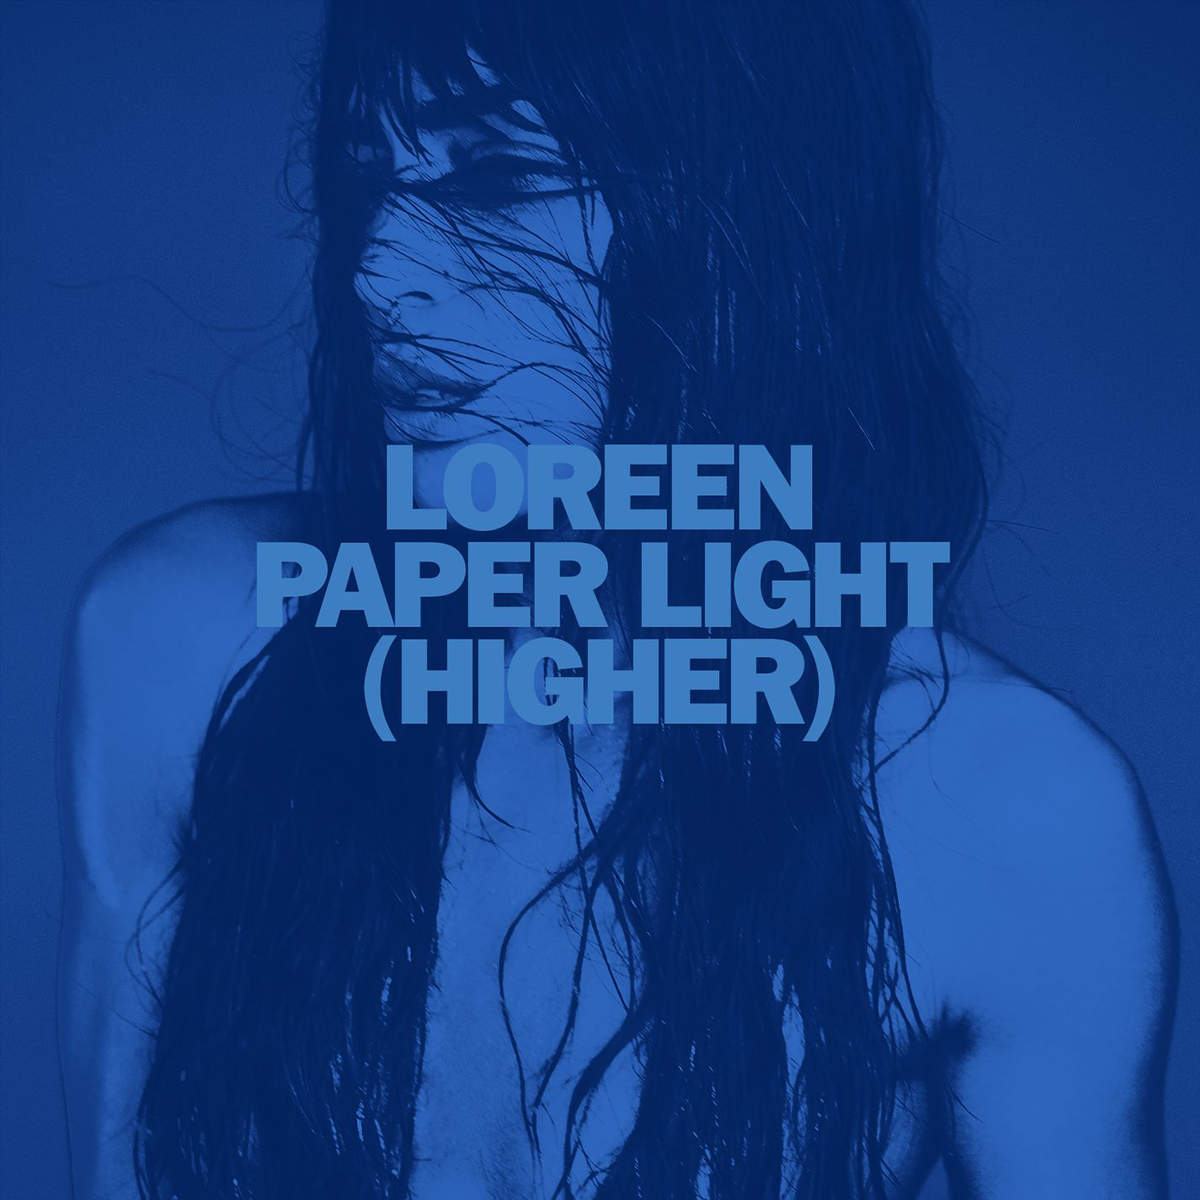 Wie findet ihr Loreens neue Single "Paper Light (Higher)"?